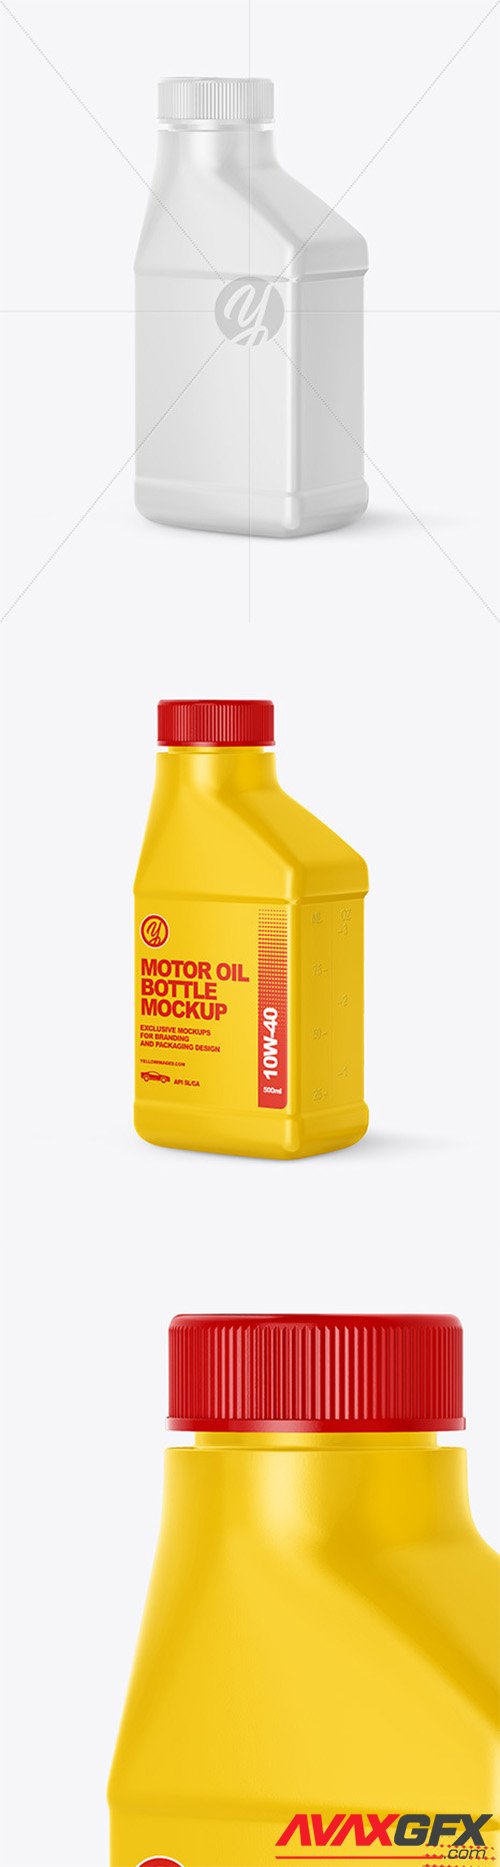 Motor Oil Bottle Mockup 59527